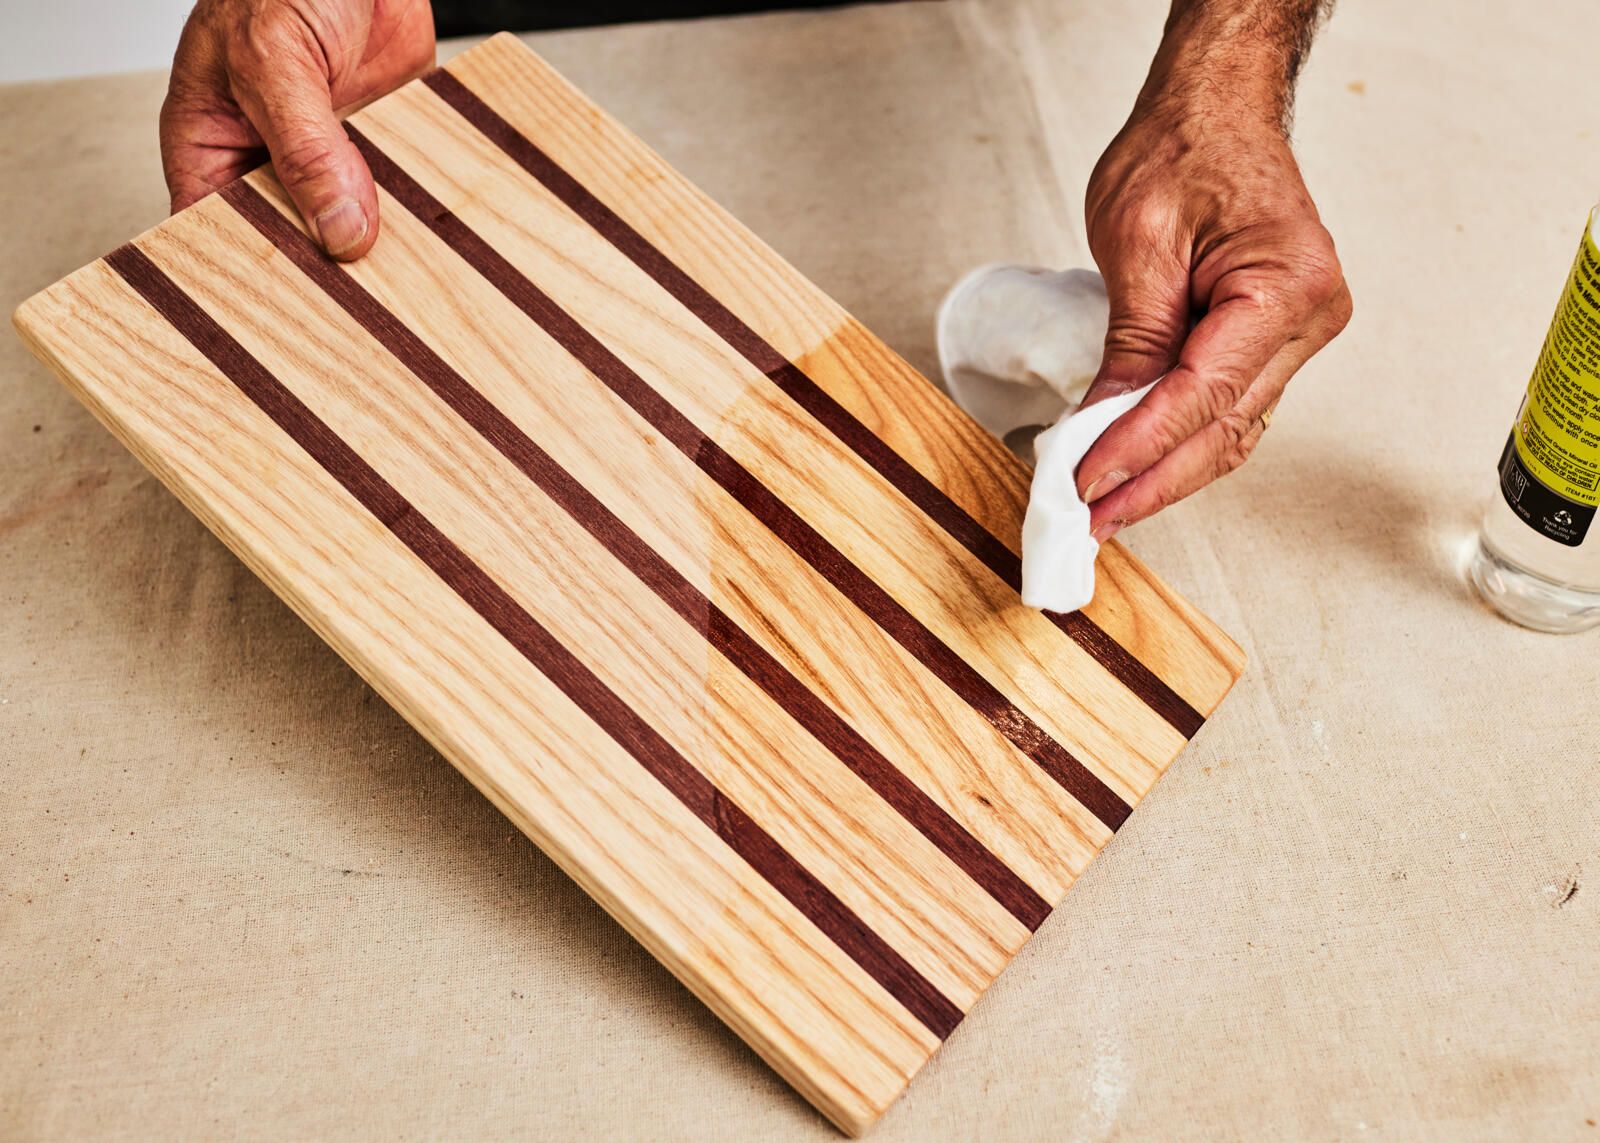 Tablas para cortar en madera únicas que hacen de su cocina